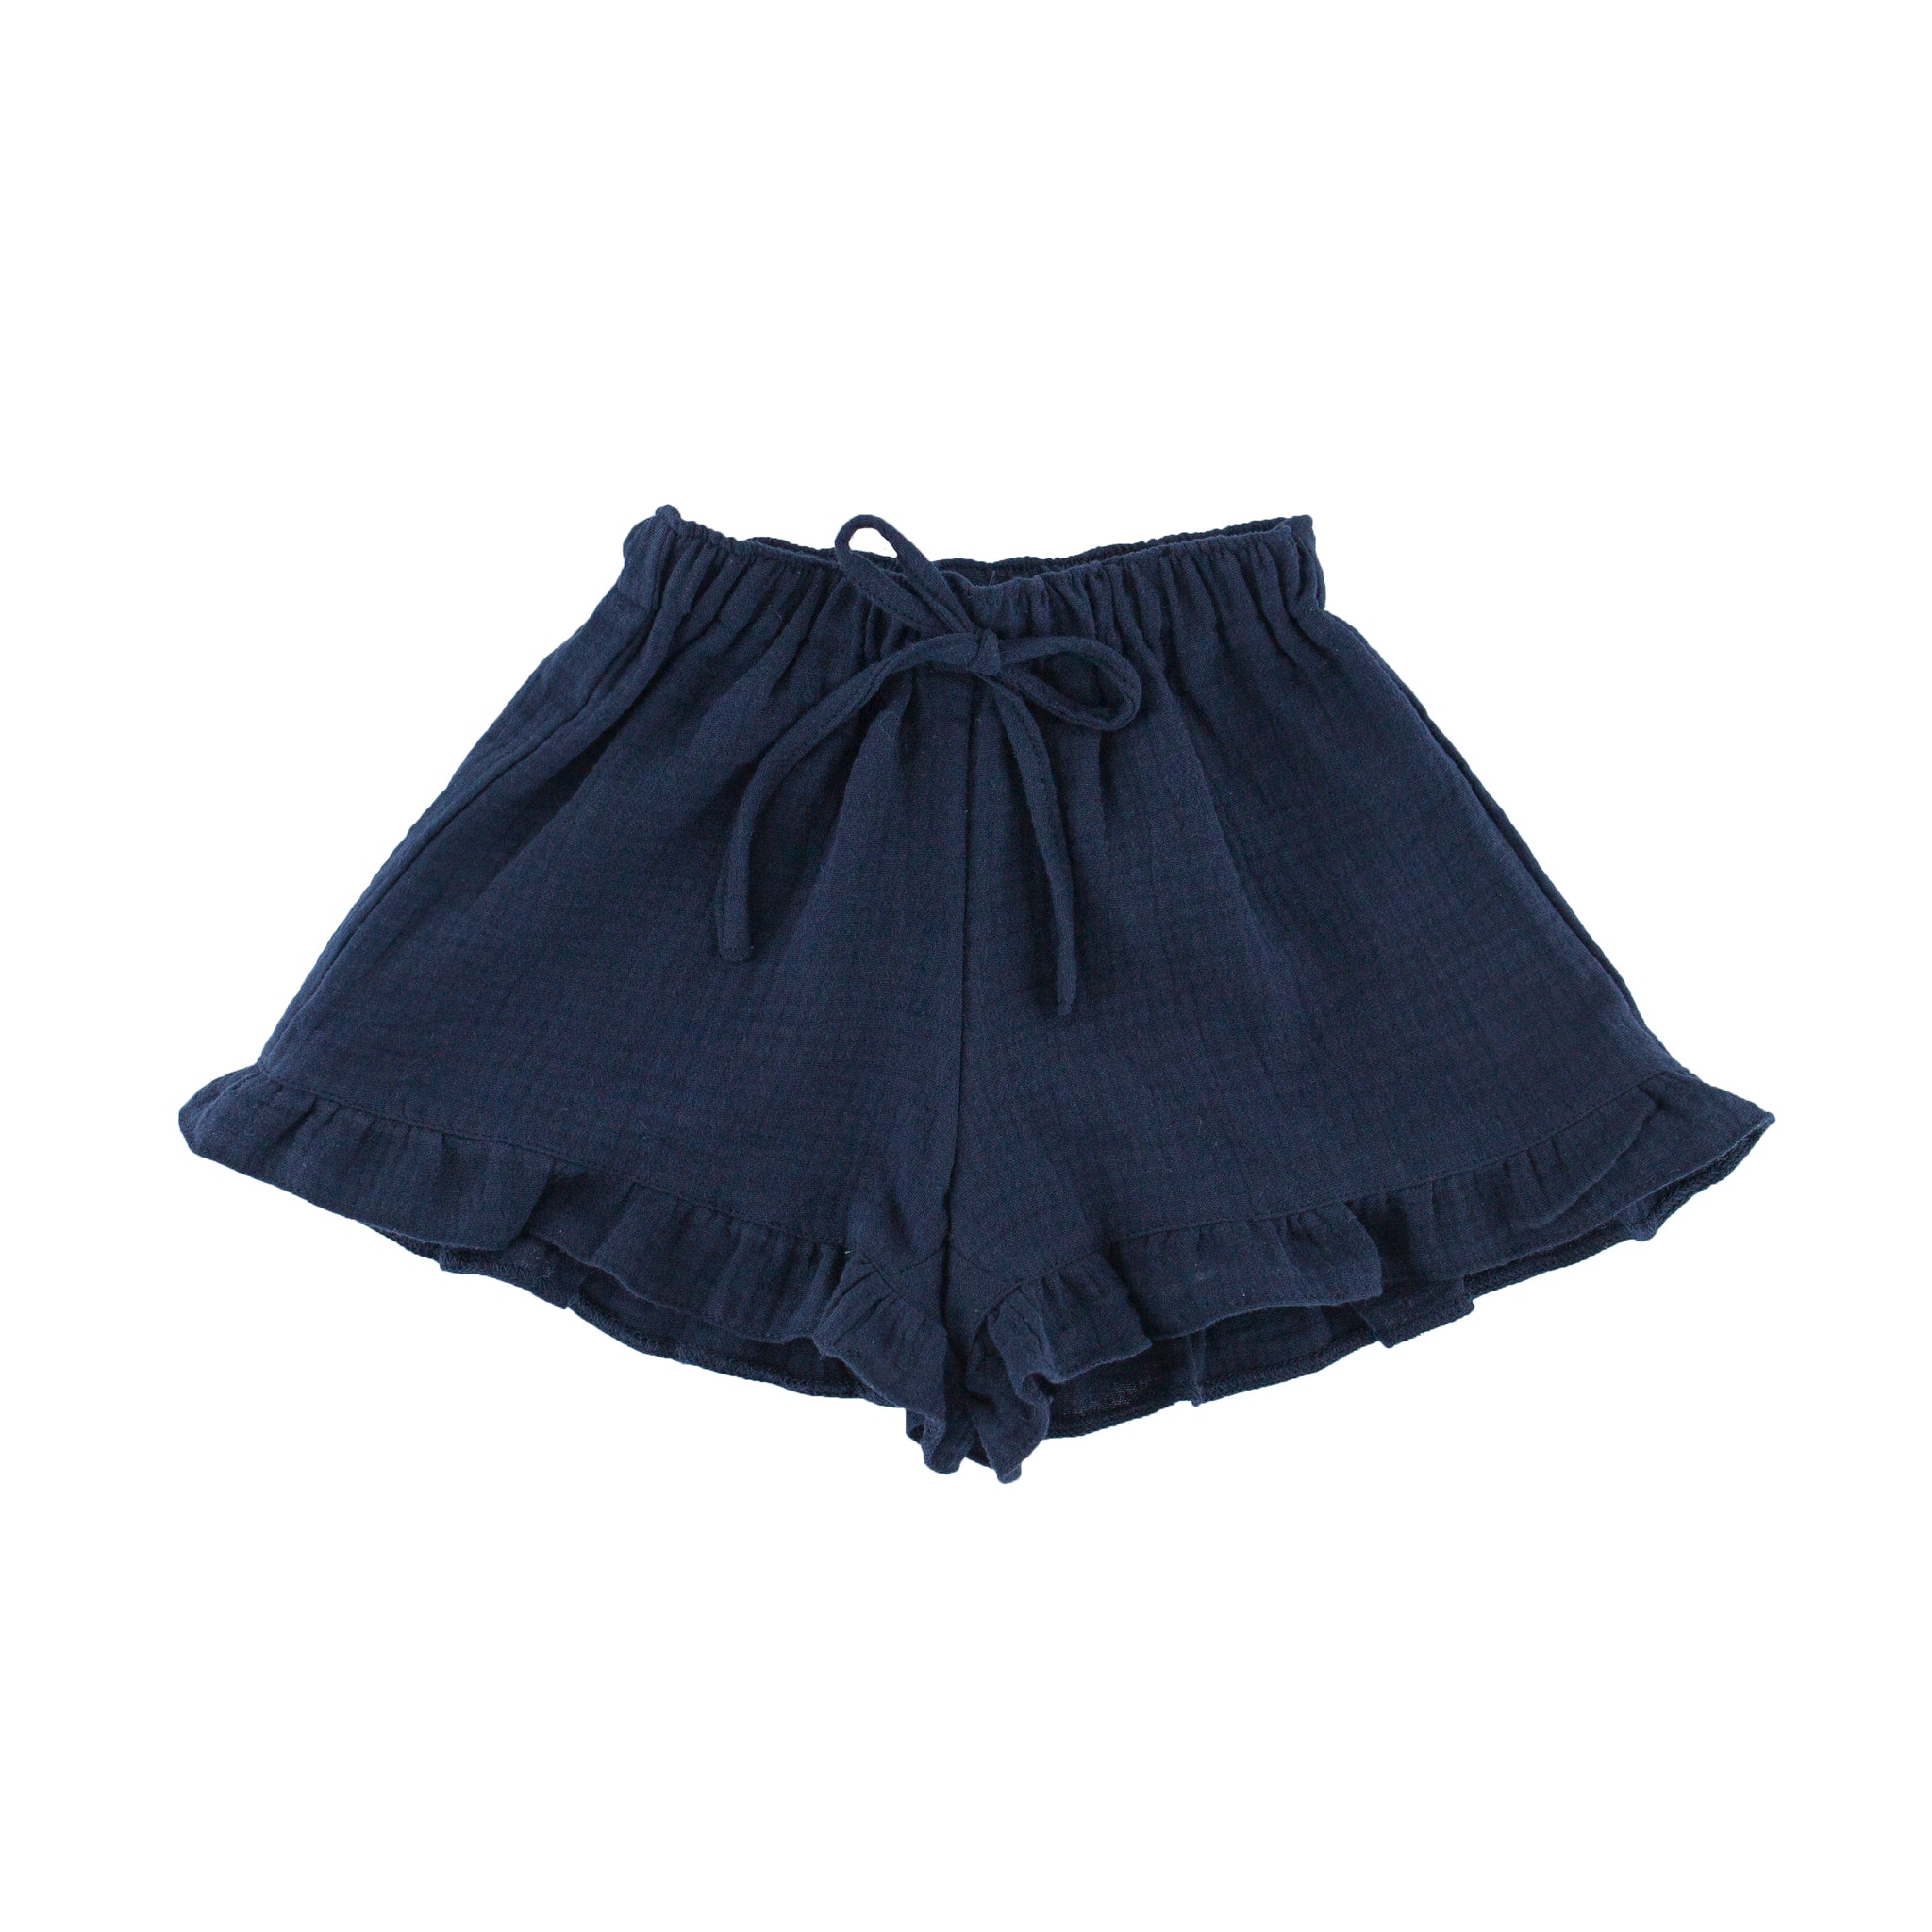 Charlene - frilled shorts - night blue